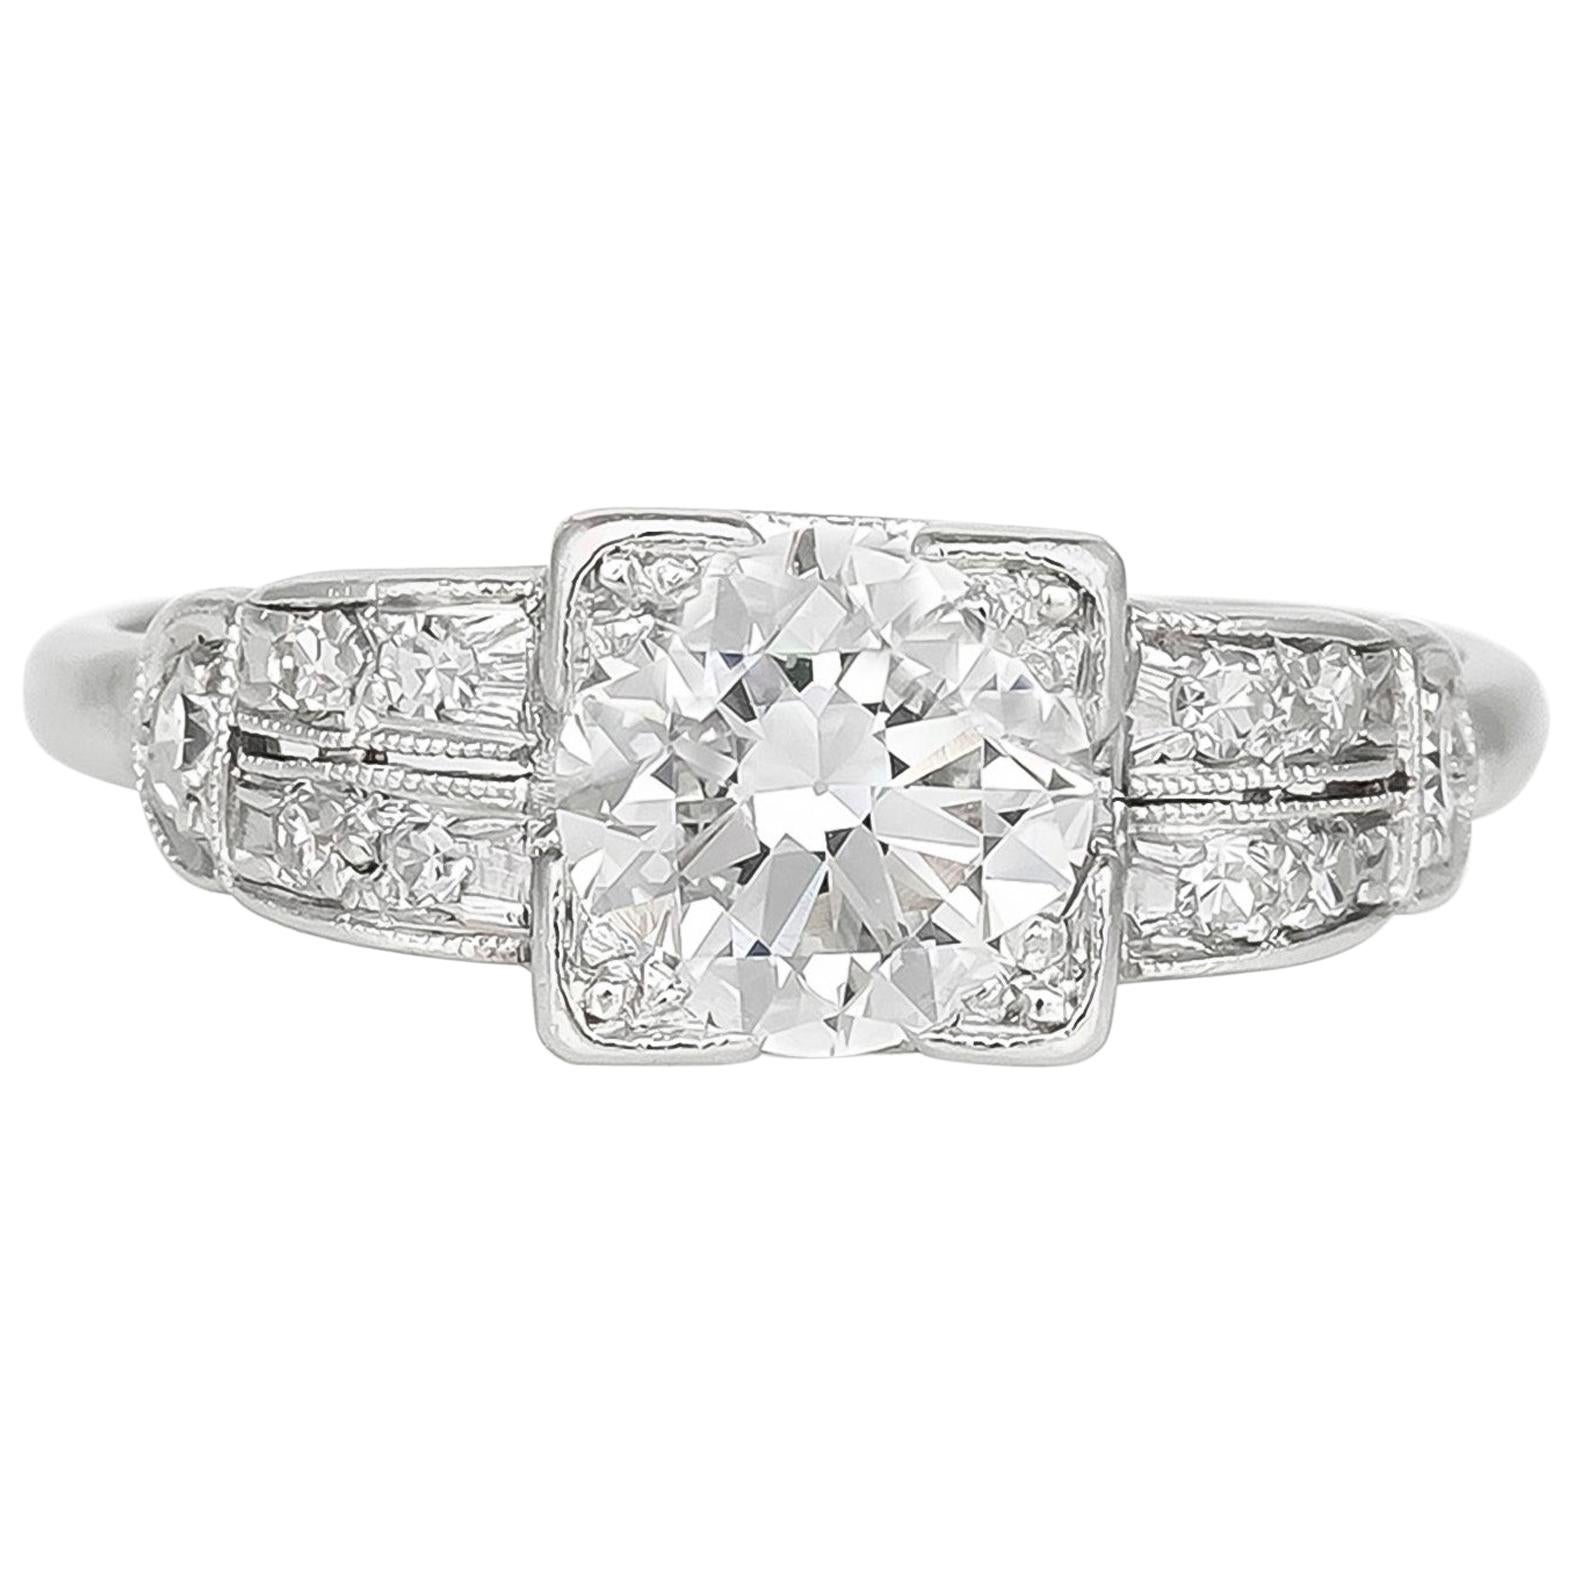 1920s-1930s Platinum Filigree 1.10 Carat Center Diamond Engagement Ring